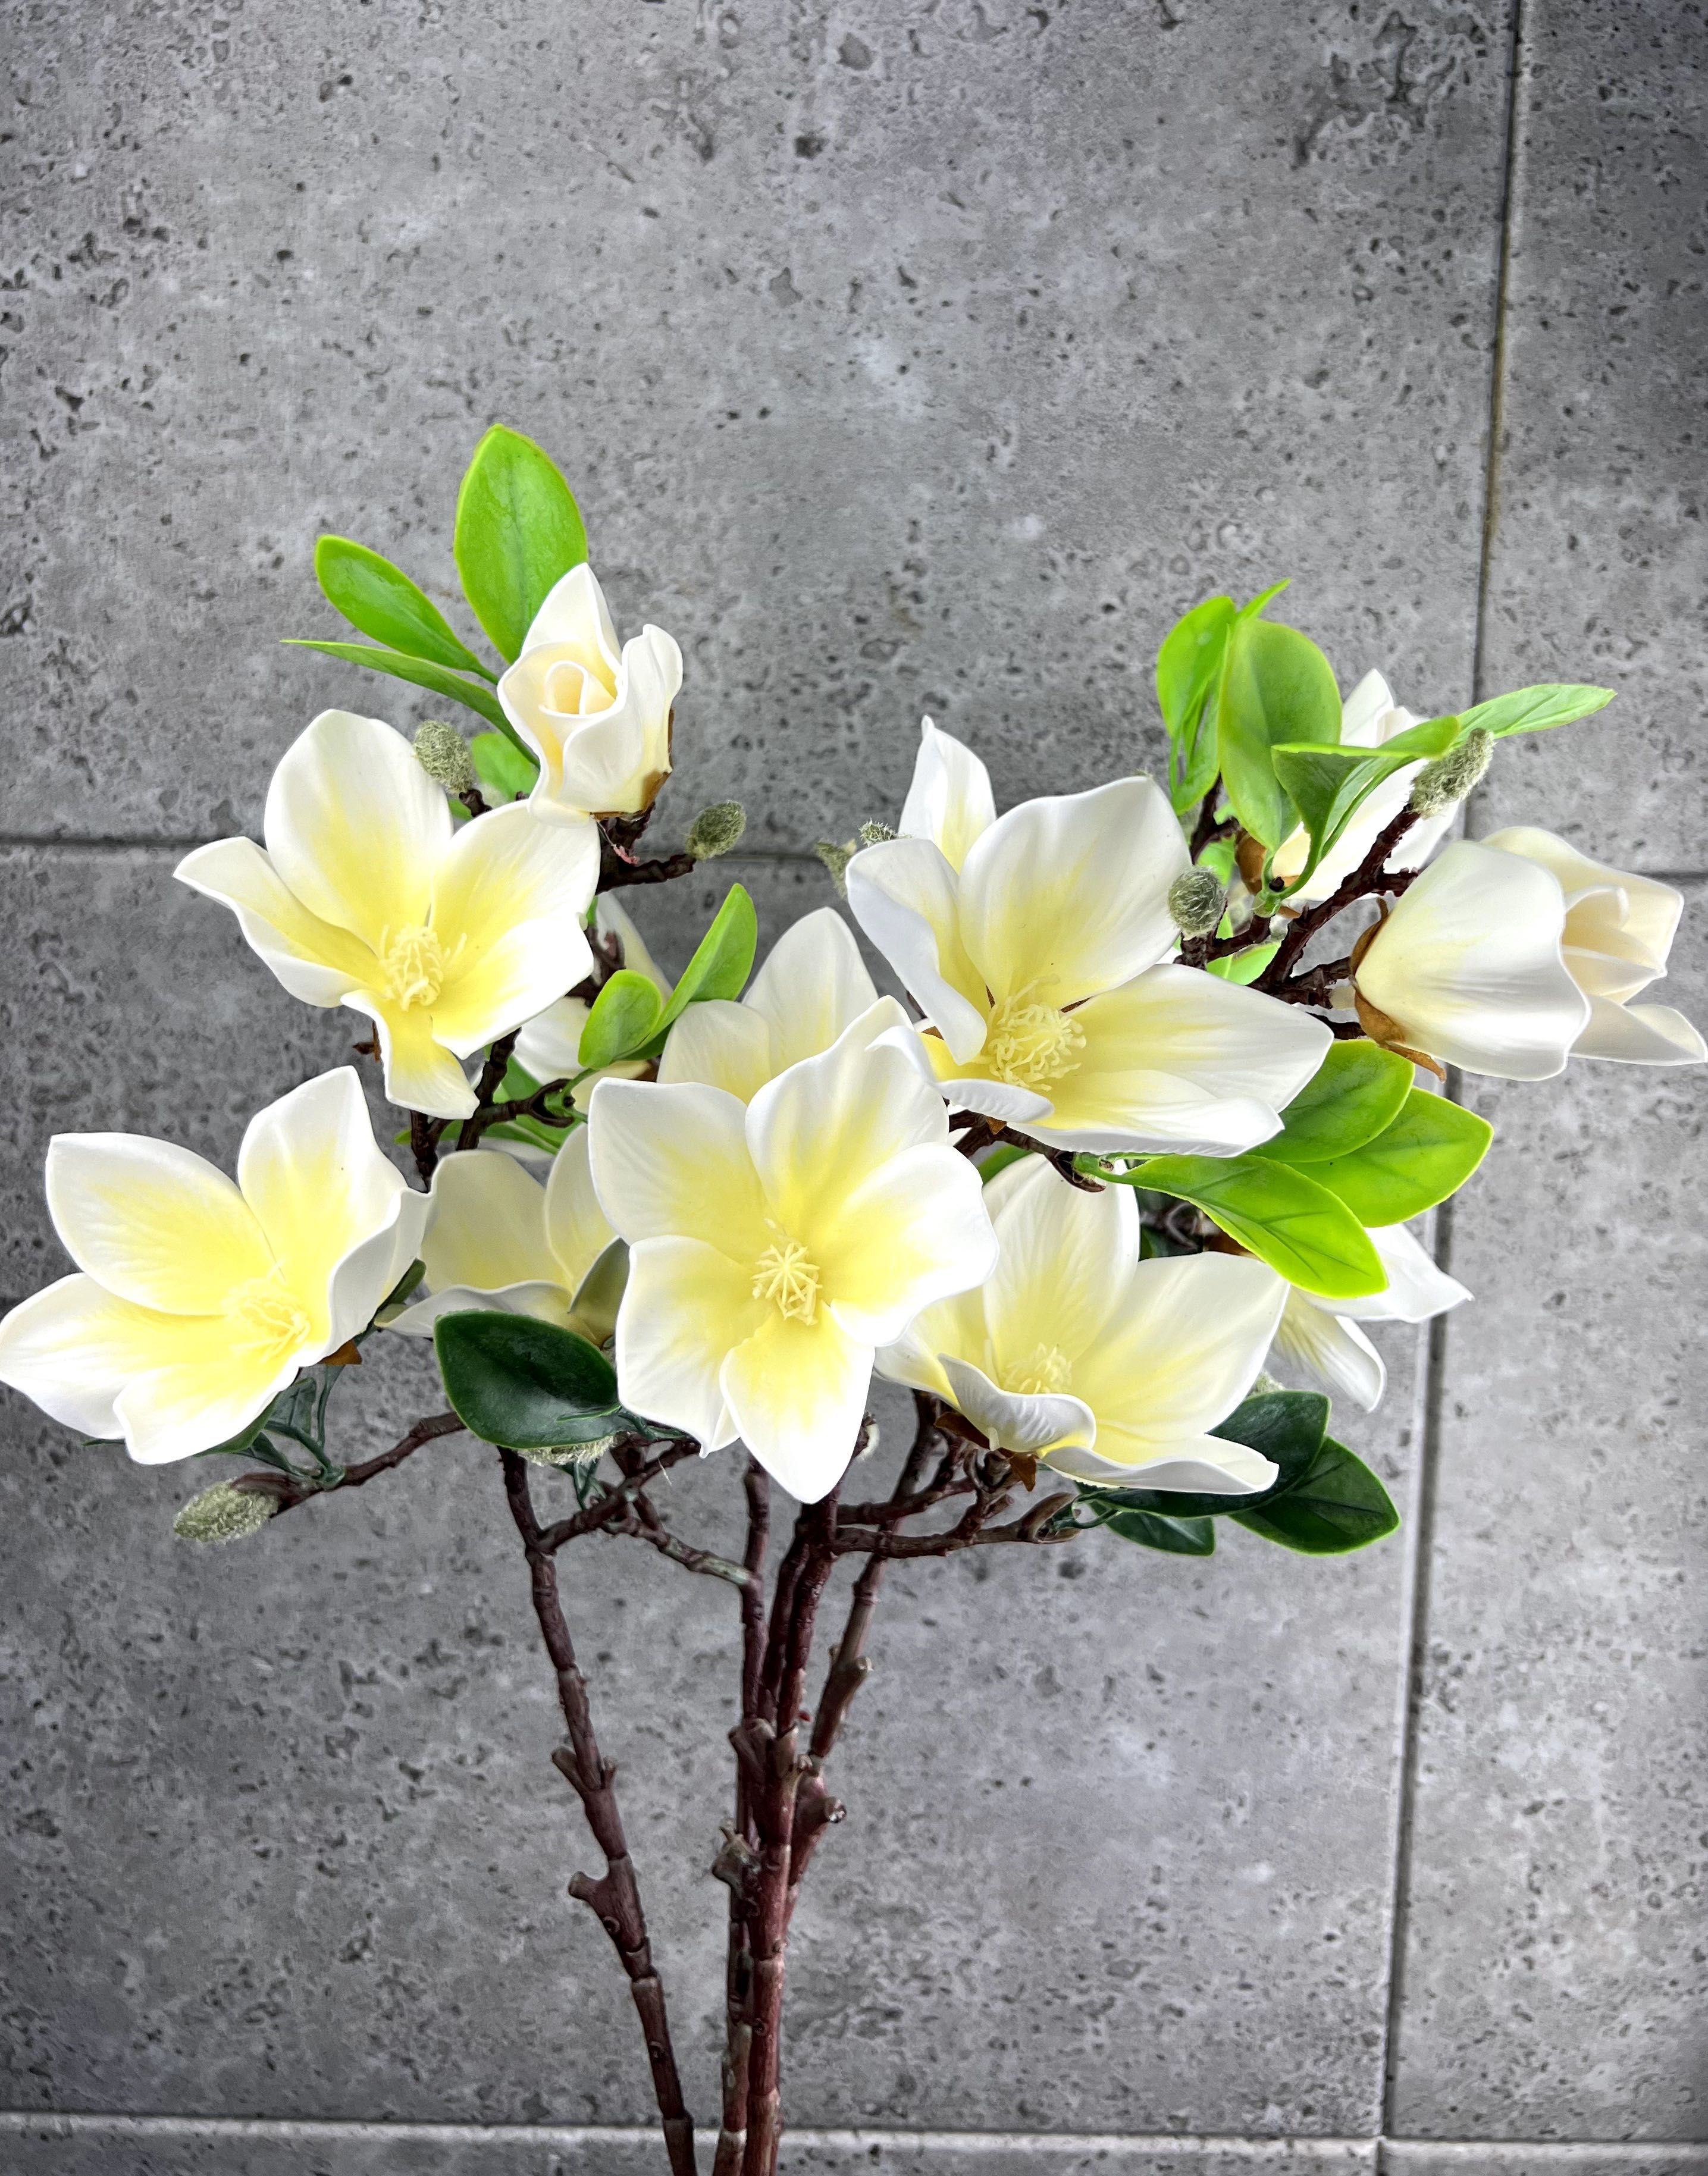 Magnolia, gałąź magnolii PIANKOWA PREMIUM JAKOŚĆ (cena za 1 sztukę)